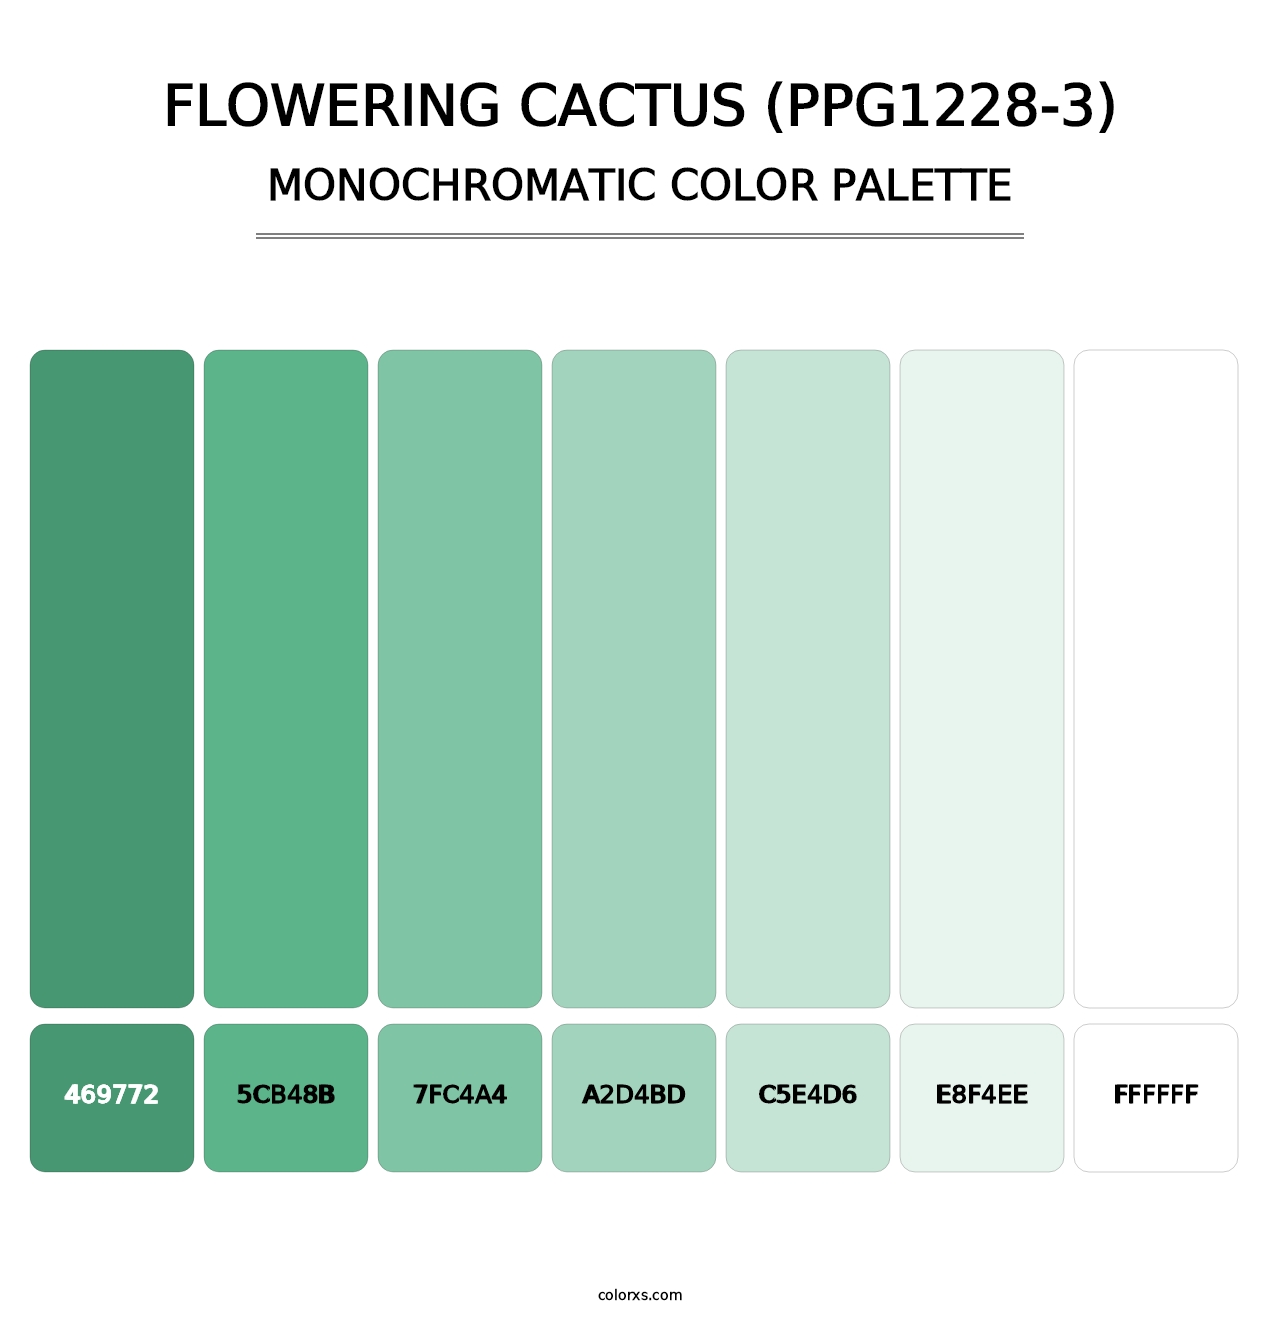 Flowering Cactus (PPG1228-3) - Monochromatic Color Palette